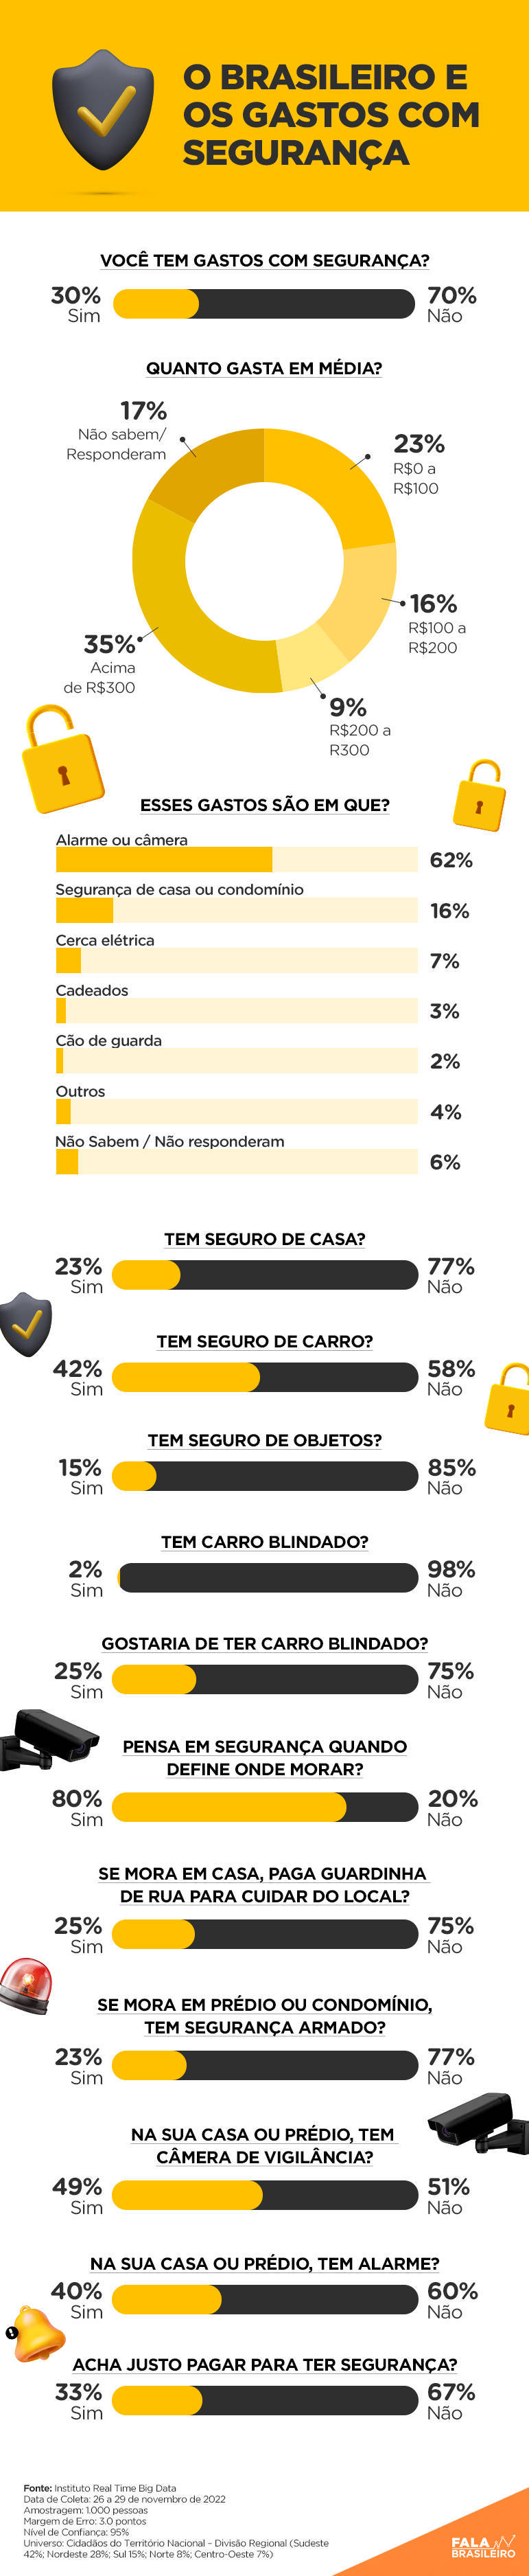 Entenda os gastos dos brasileiros com segurança, segundo pesquisa